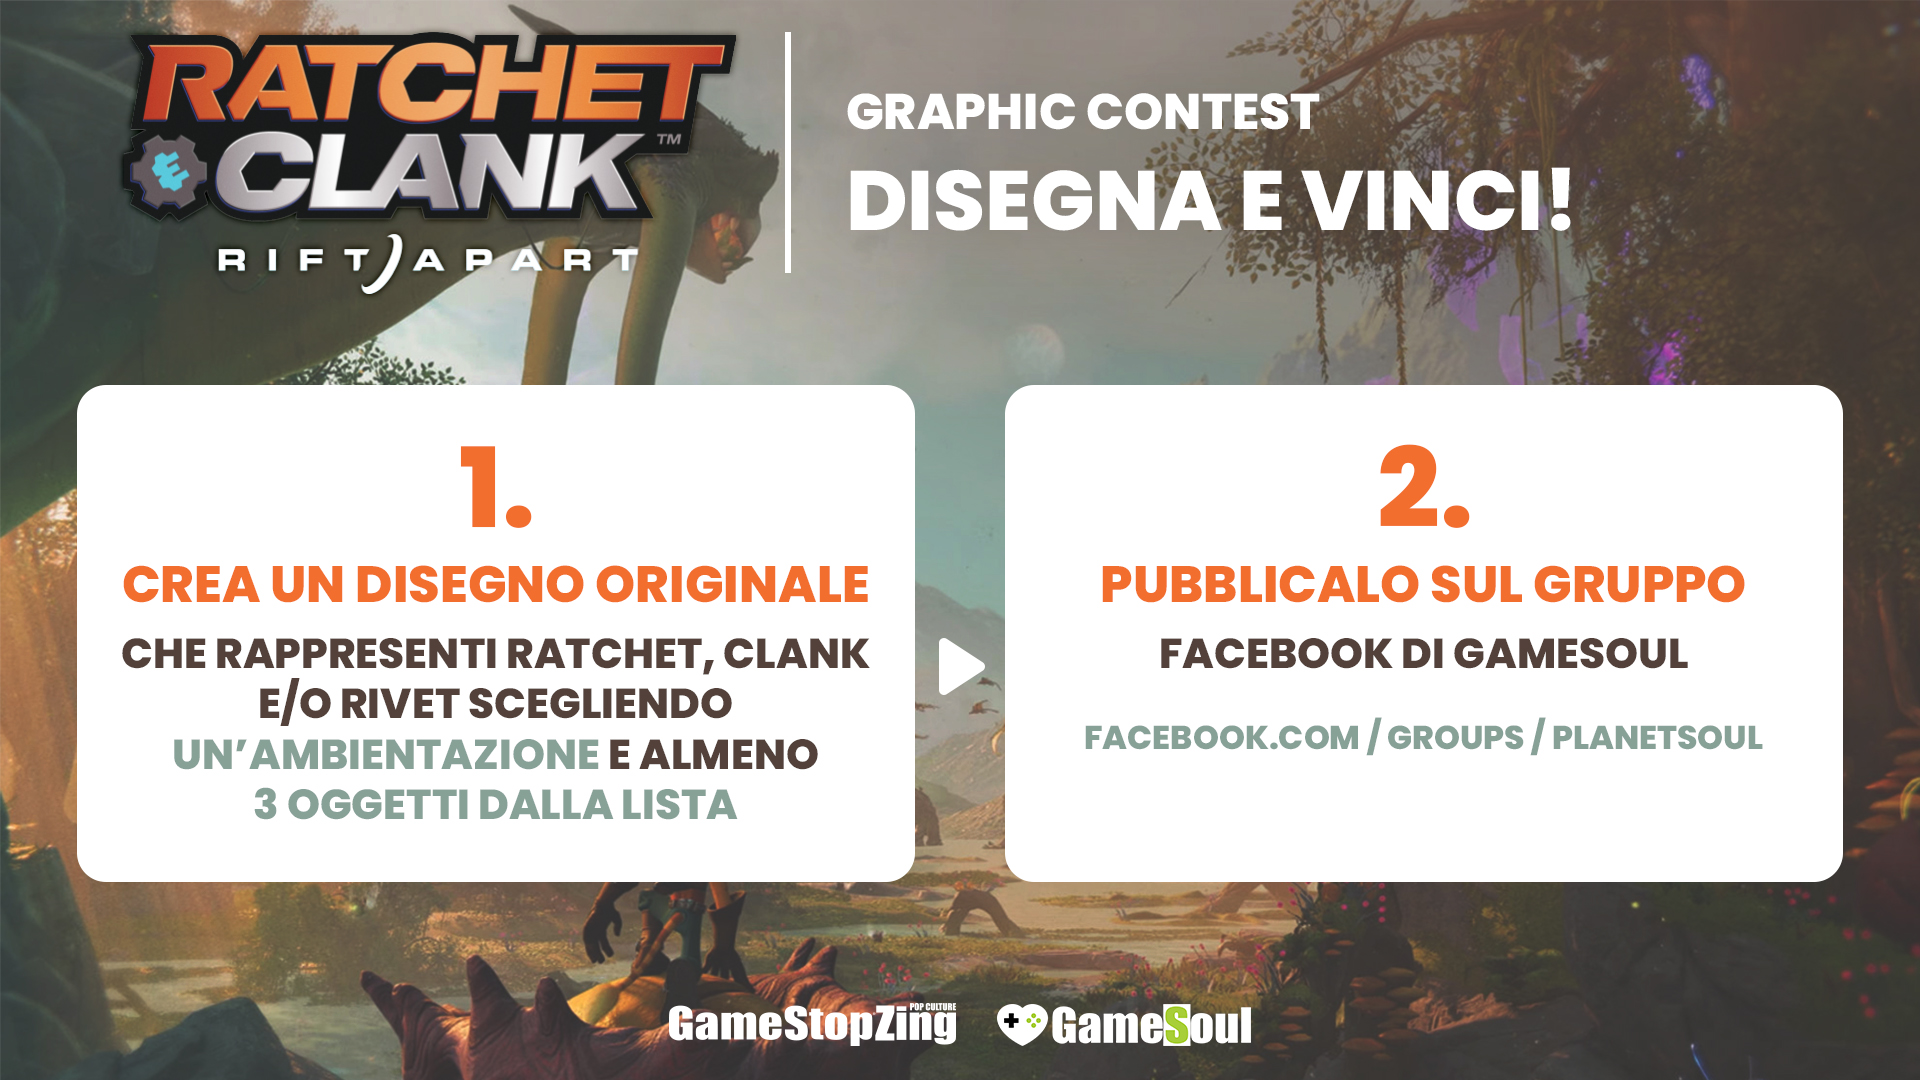 Ratchet & Clank: Rift Apart Graphic Contest, come partecipare